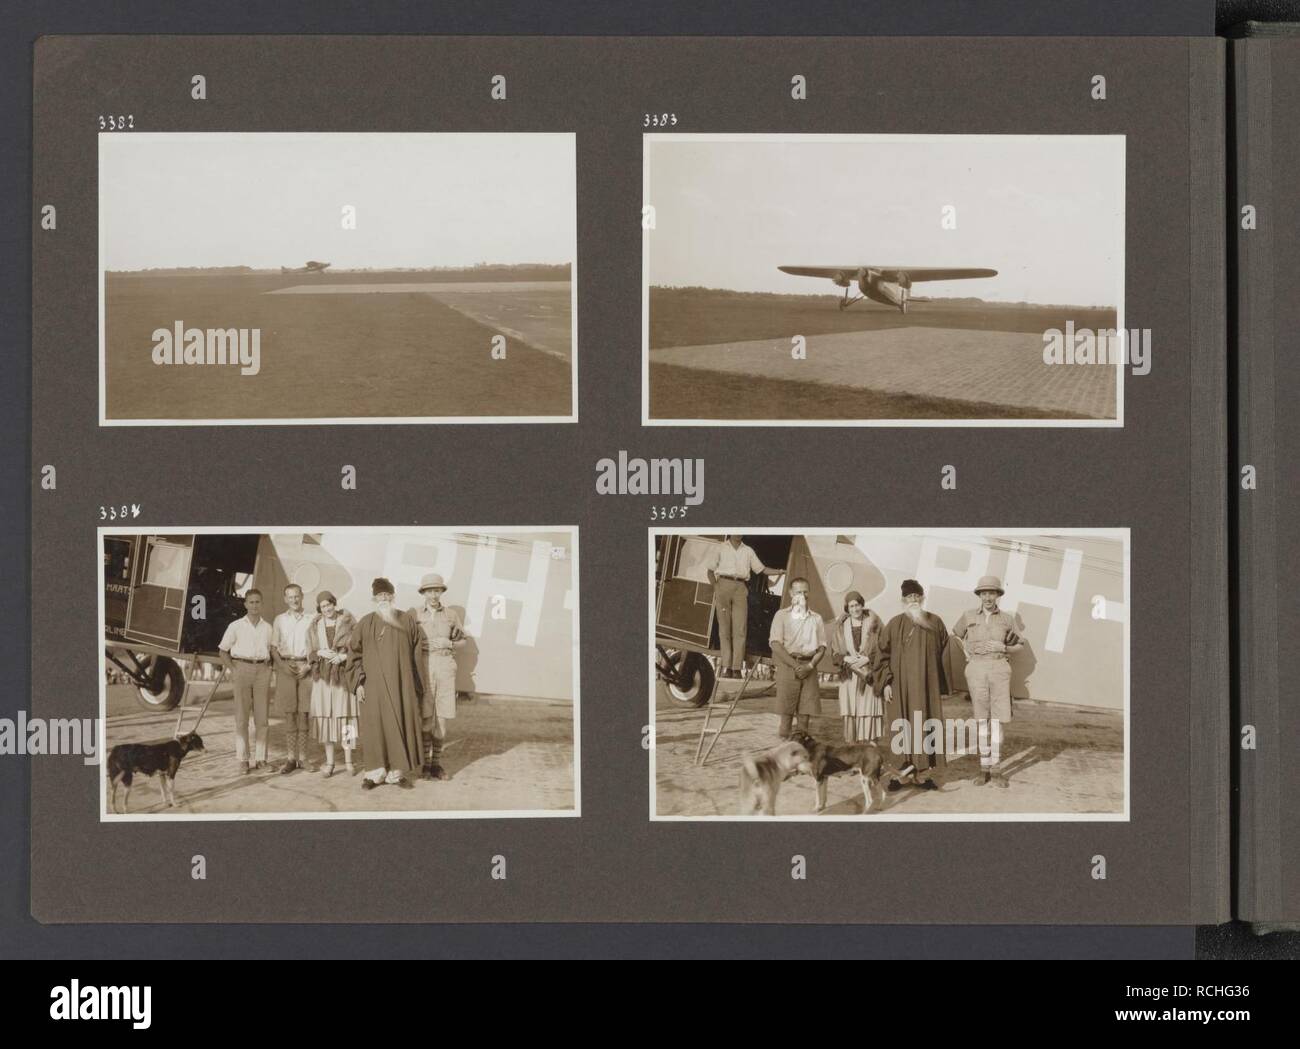 Albumblad incontrato vier fotos. Linksboven tweemotorig vliegtuig op een landingsbaan, Bestanddeelnr 36 32. Foto Stock